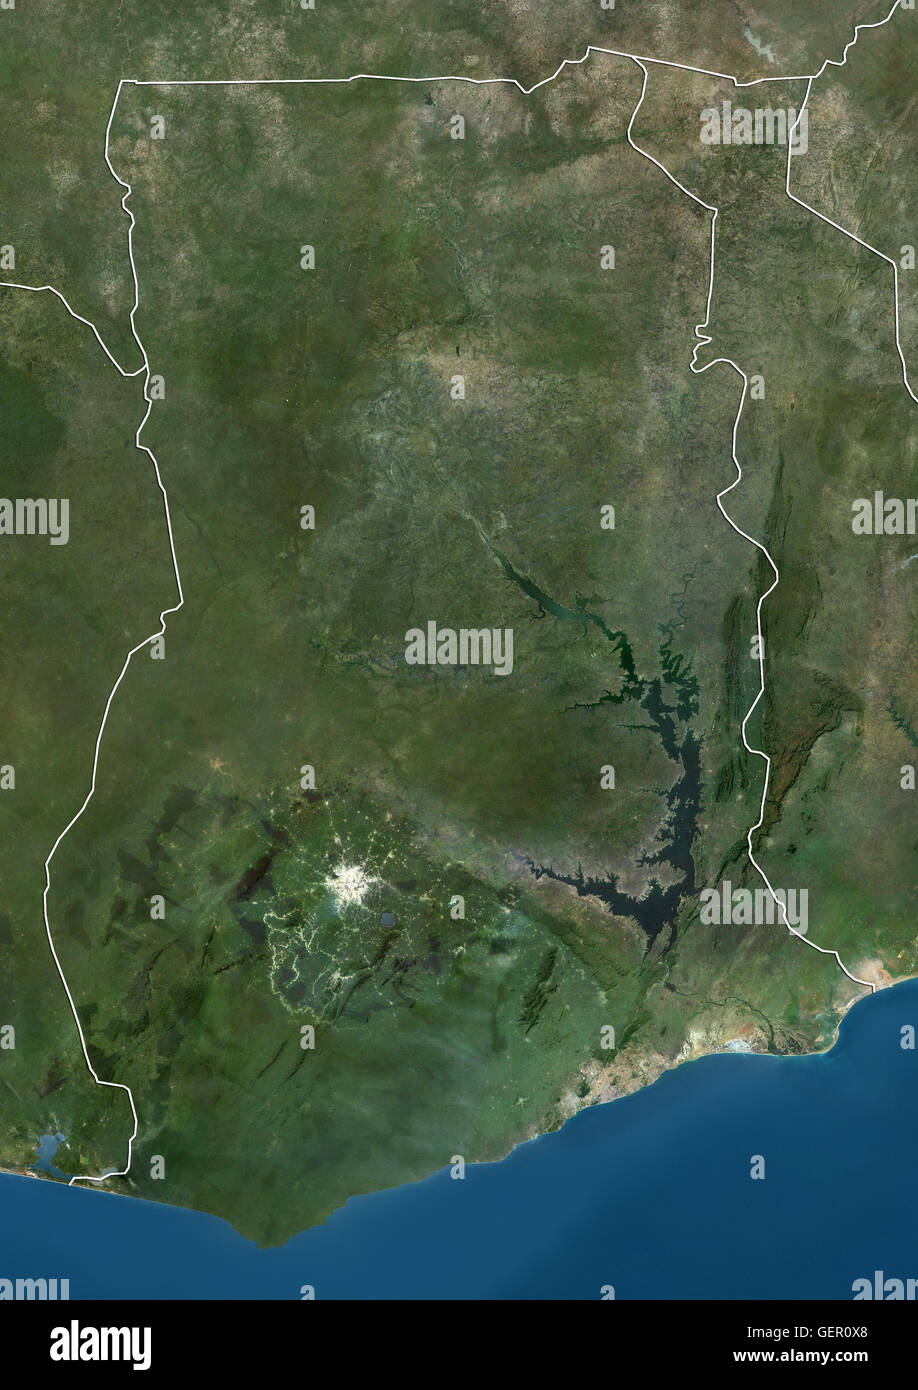 Satellitenansicht von Ghana (mit Ländergrenzen). Dieses Bild wurde aus Daten von Landsat-Satelliten erworben erstellt. Stockfoto